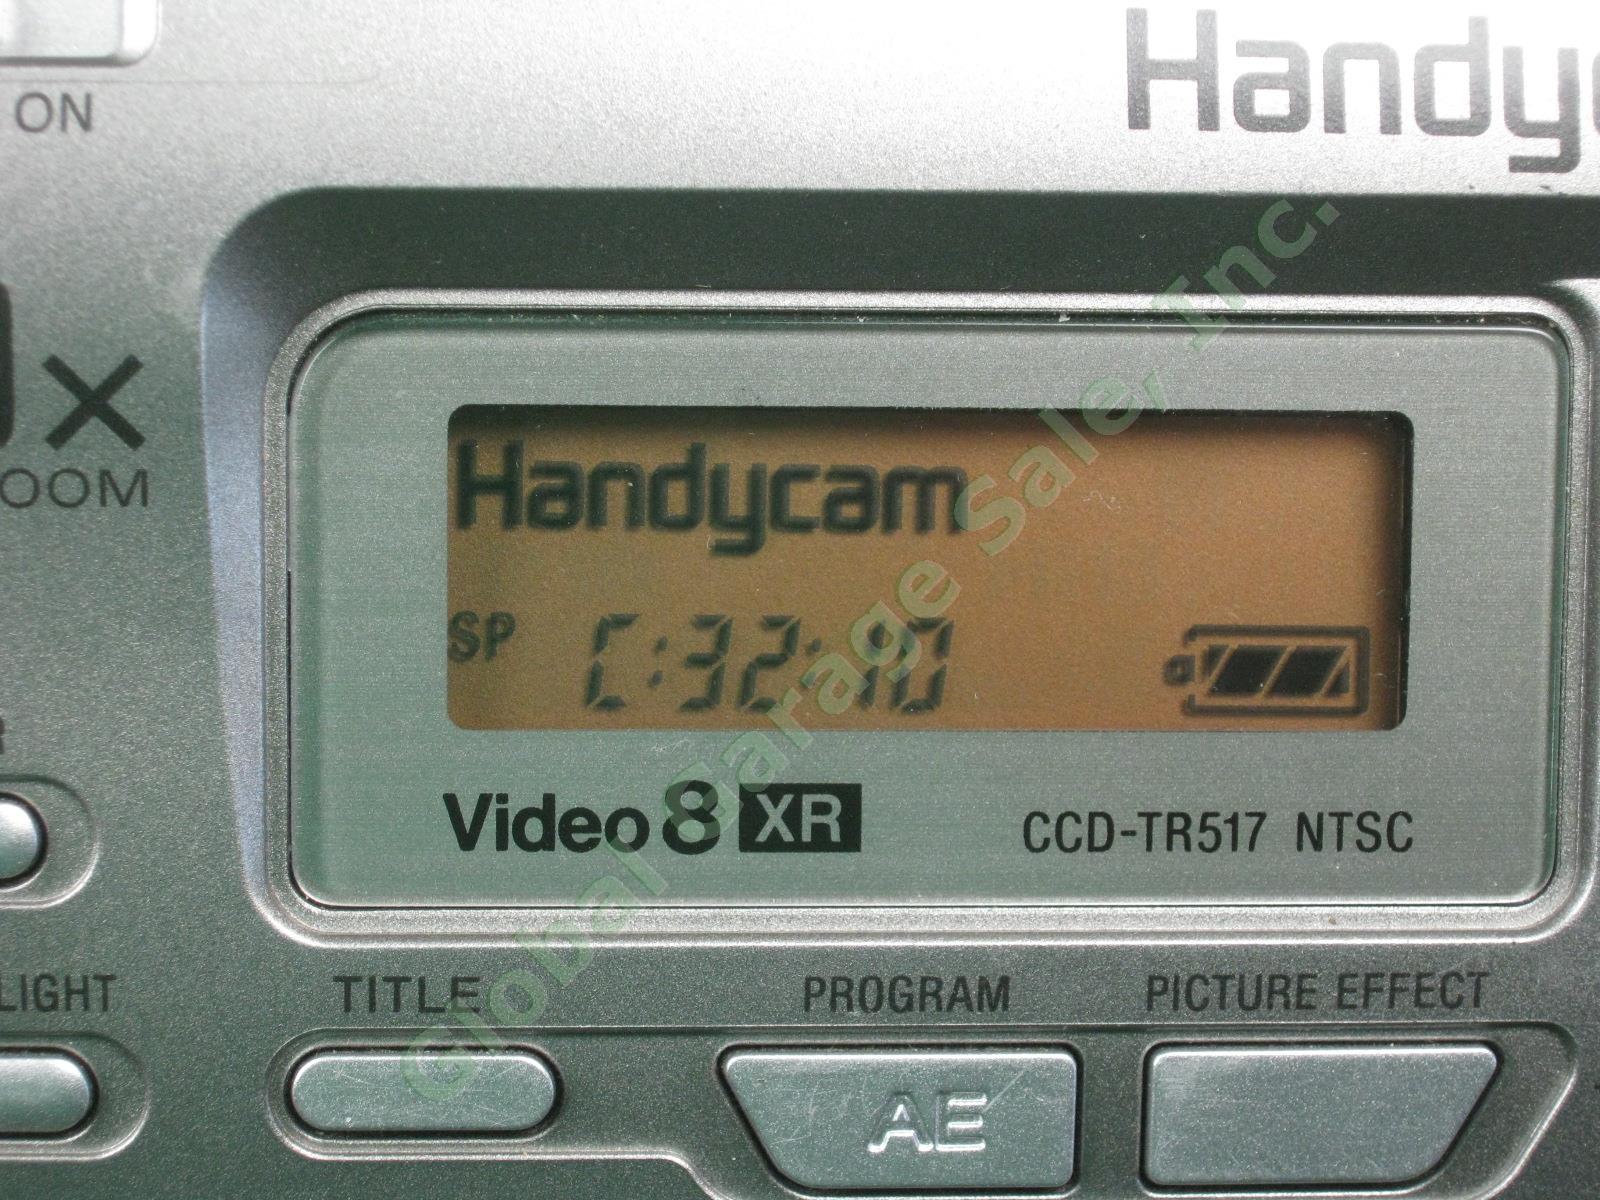 Sony HandyCam CCD-TR517 XR NTSC Hi 8 8mm Video Transfer Camcorder Bundle Lot NR! 2